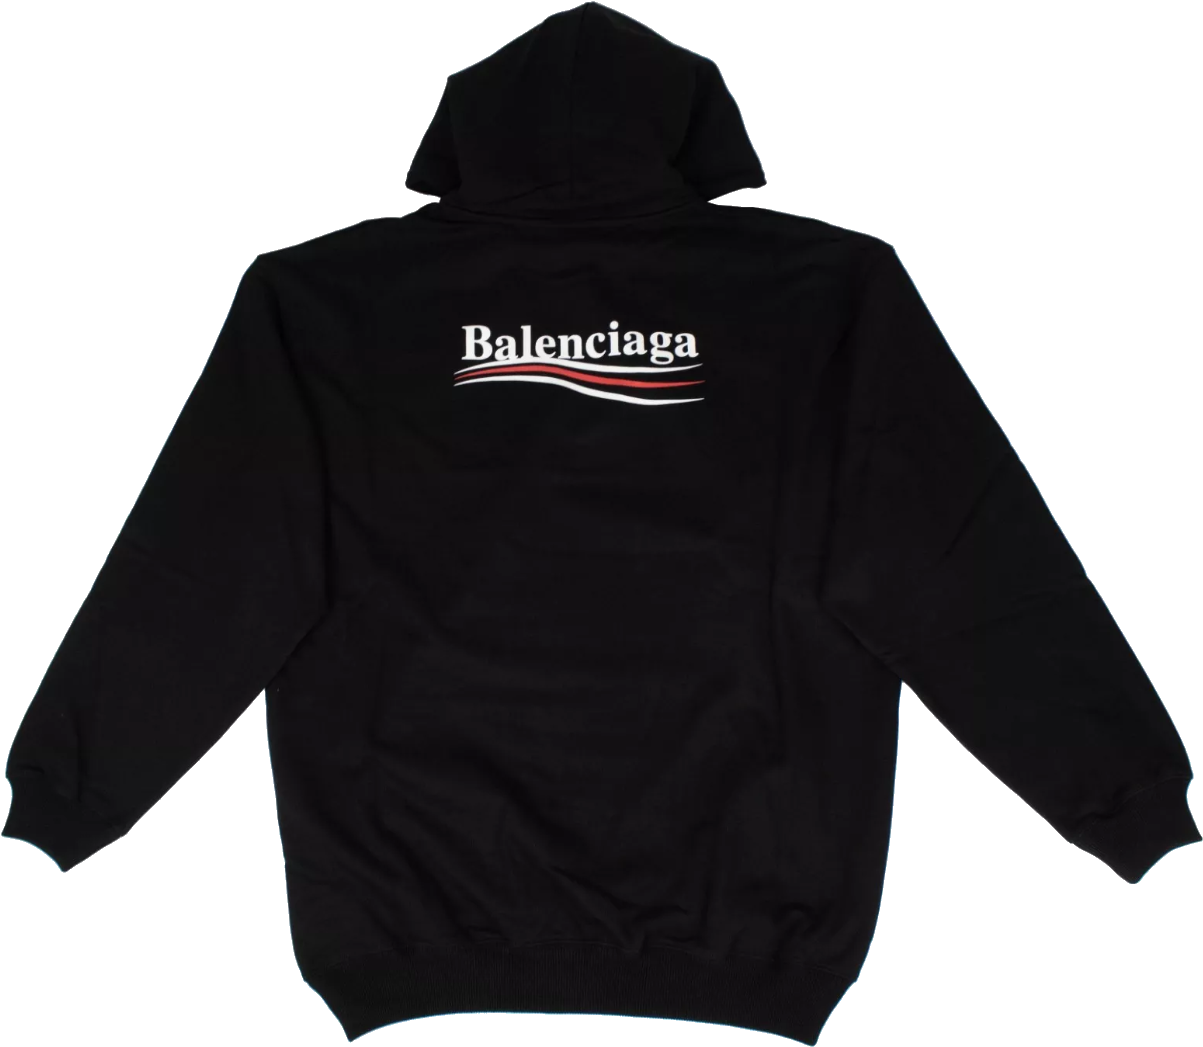 Balenciaga logo PNG image image